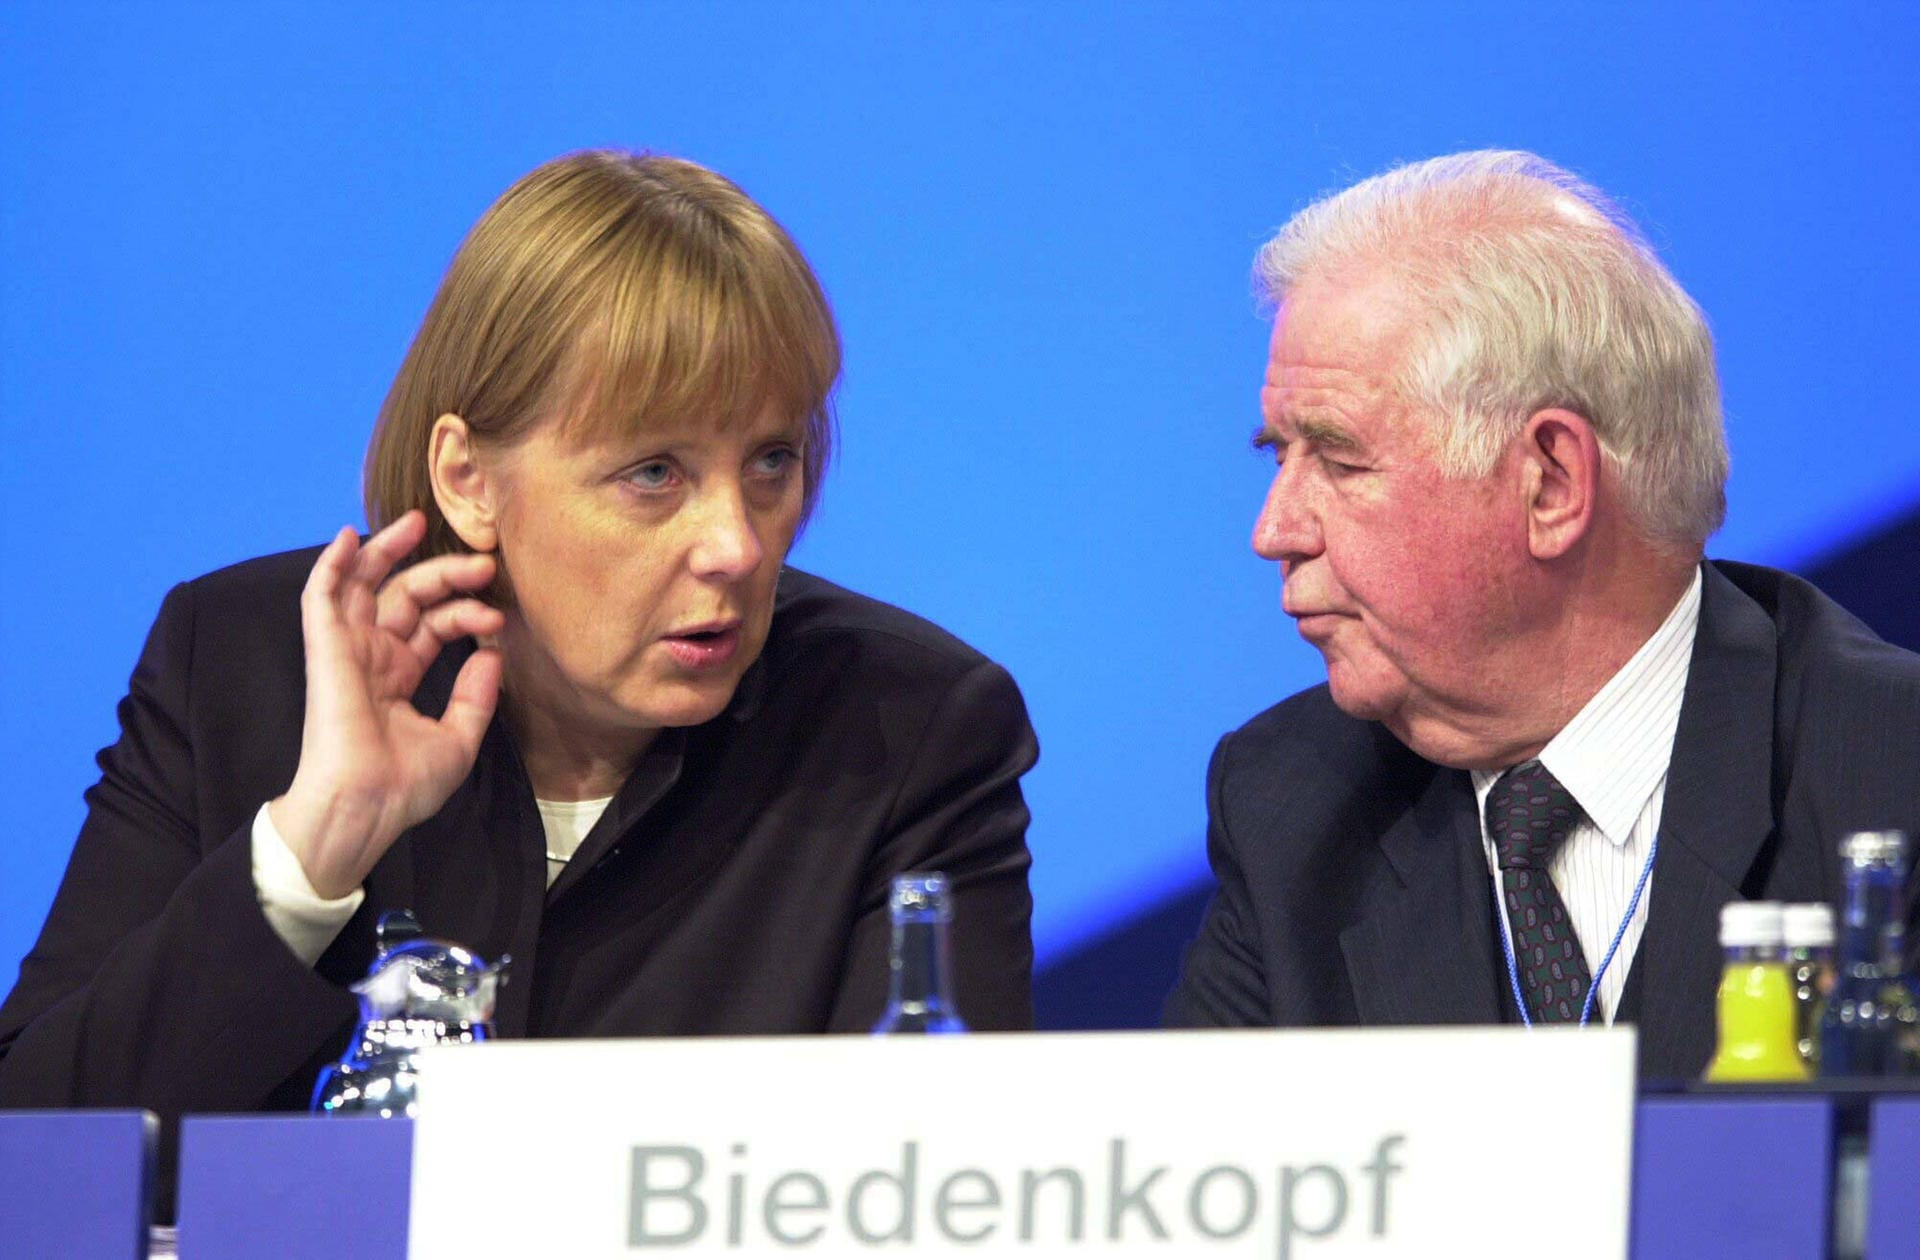 Kurt Biedenkopf und Angela Merkel beim Bundesparteitag der CDU 2001: Damals ist Biedenkopf Ministerpräsident von Sachsen und Merkel CDU-Bundesvorsitzende.